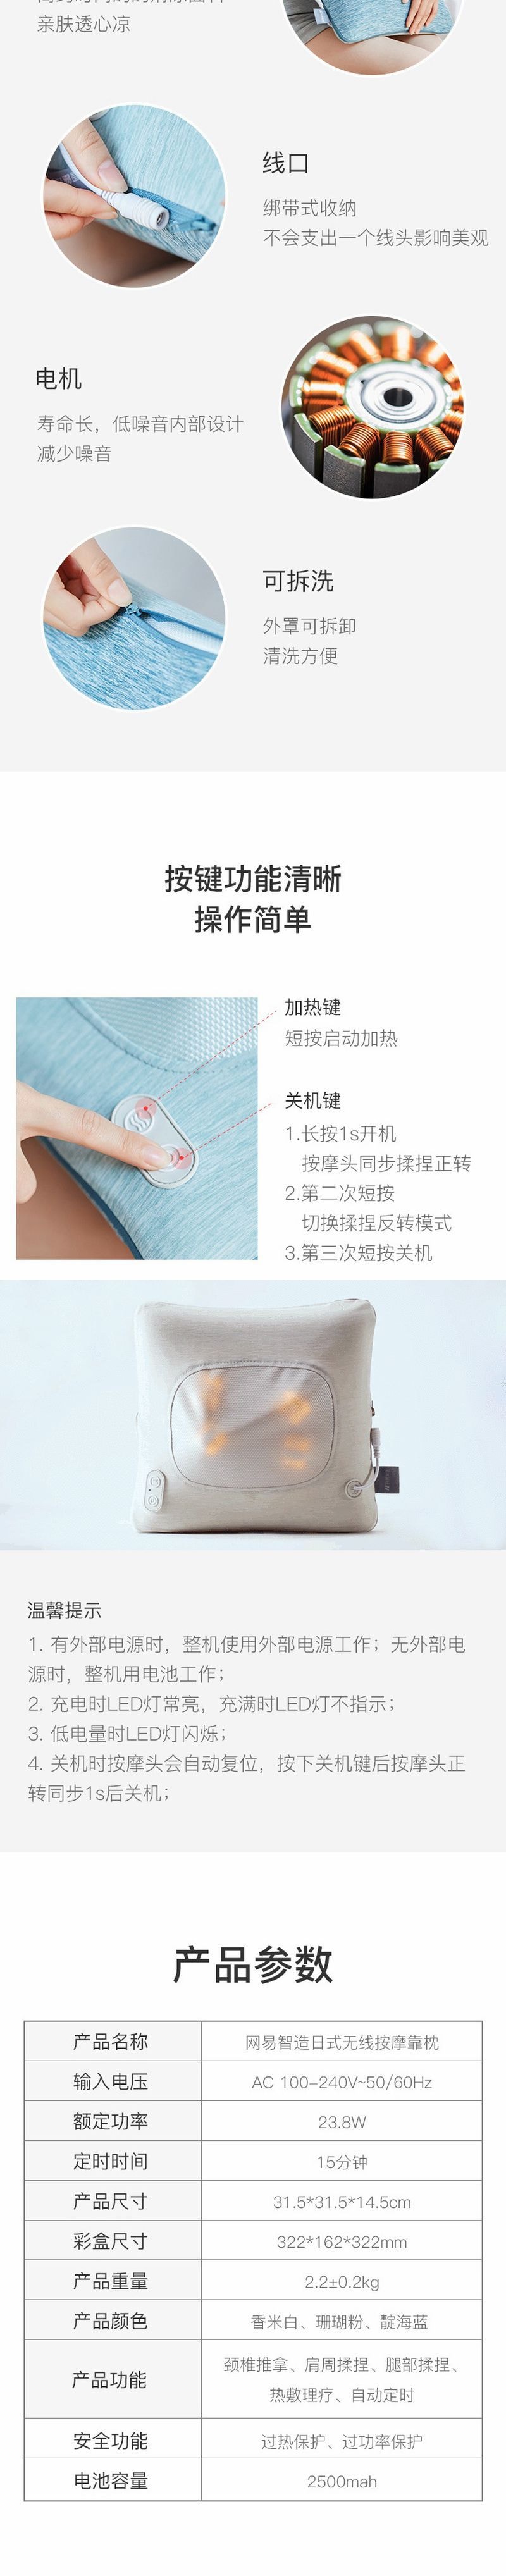 Japanese-style Wireless Massage Pillow Pink [5-7 Days U.S. Free Shipping]